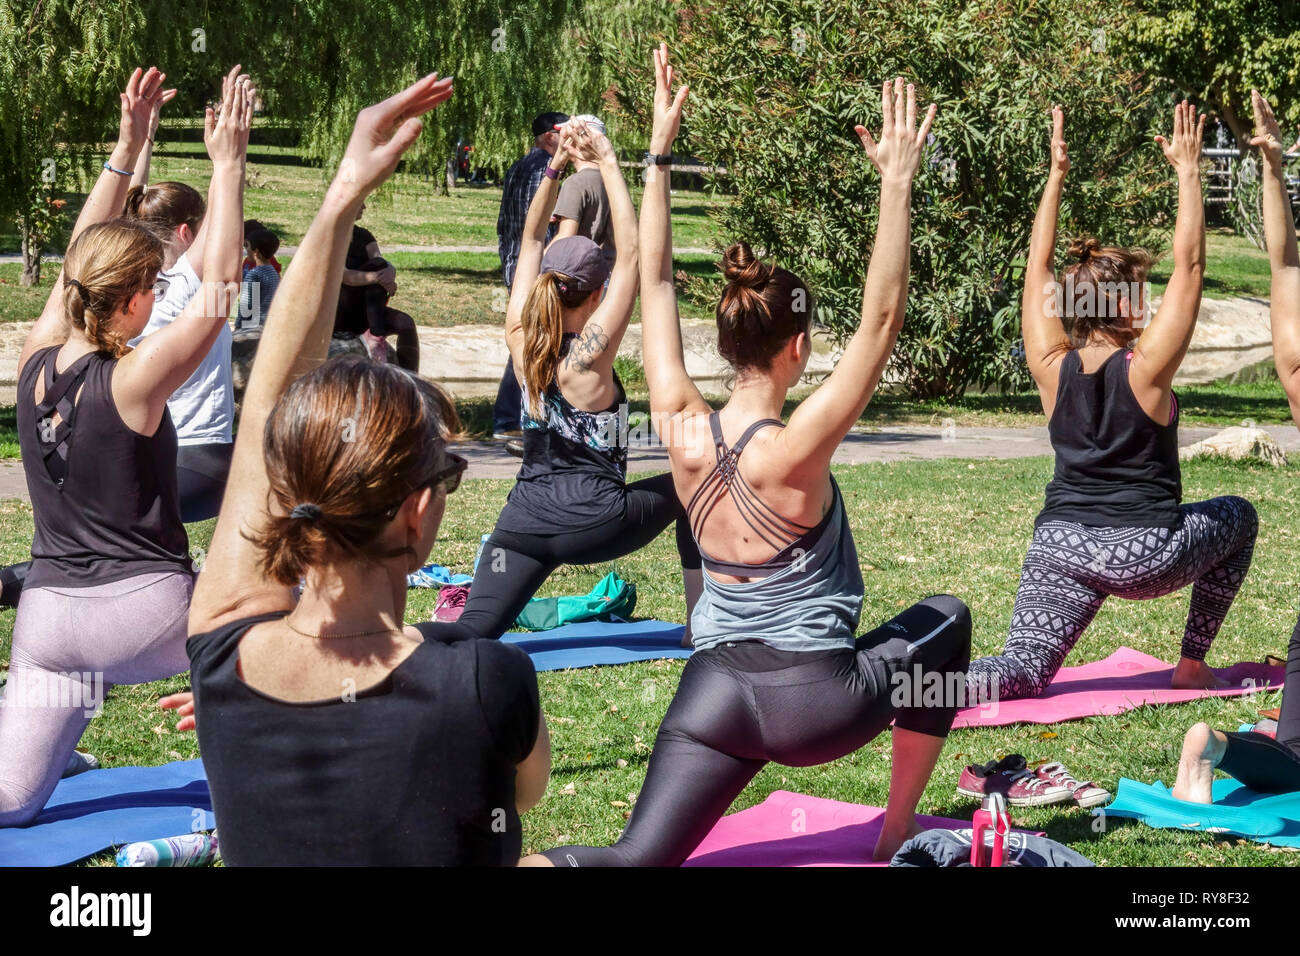 Valencia Turia Park, Menschen, Frauen treffen sich und üben im Stadtpark an der frischen Luft, Valencia Spanien Yoga-Klasse Gruppe Fitness gesunde Lebensweise Stockfoto